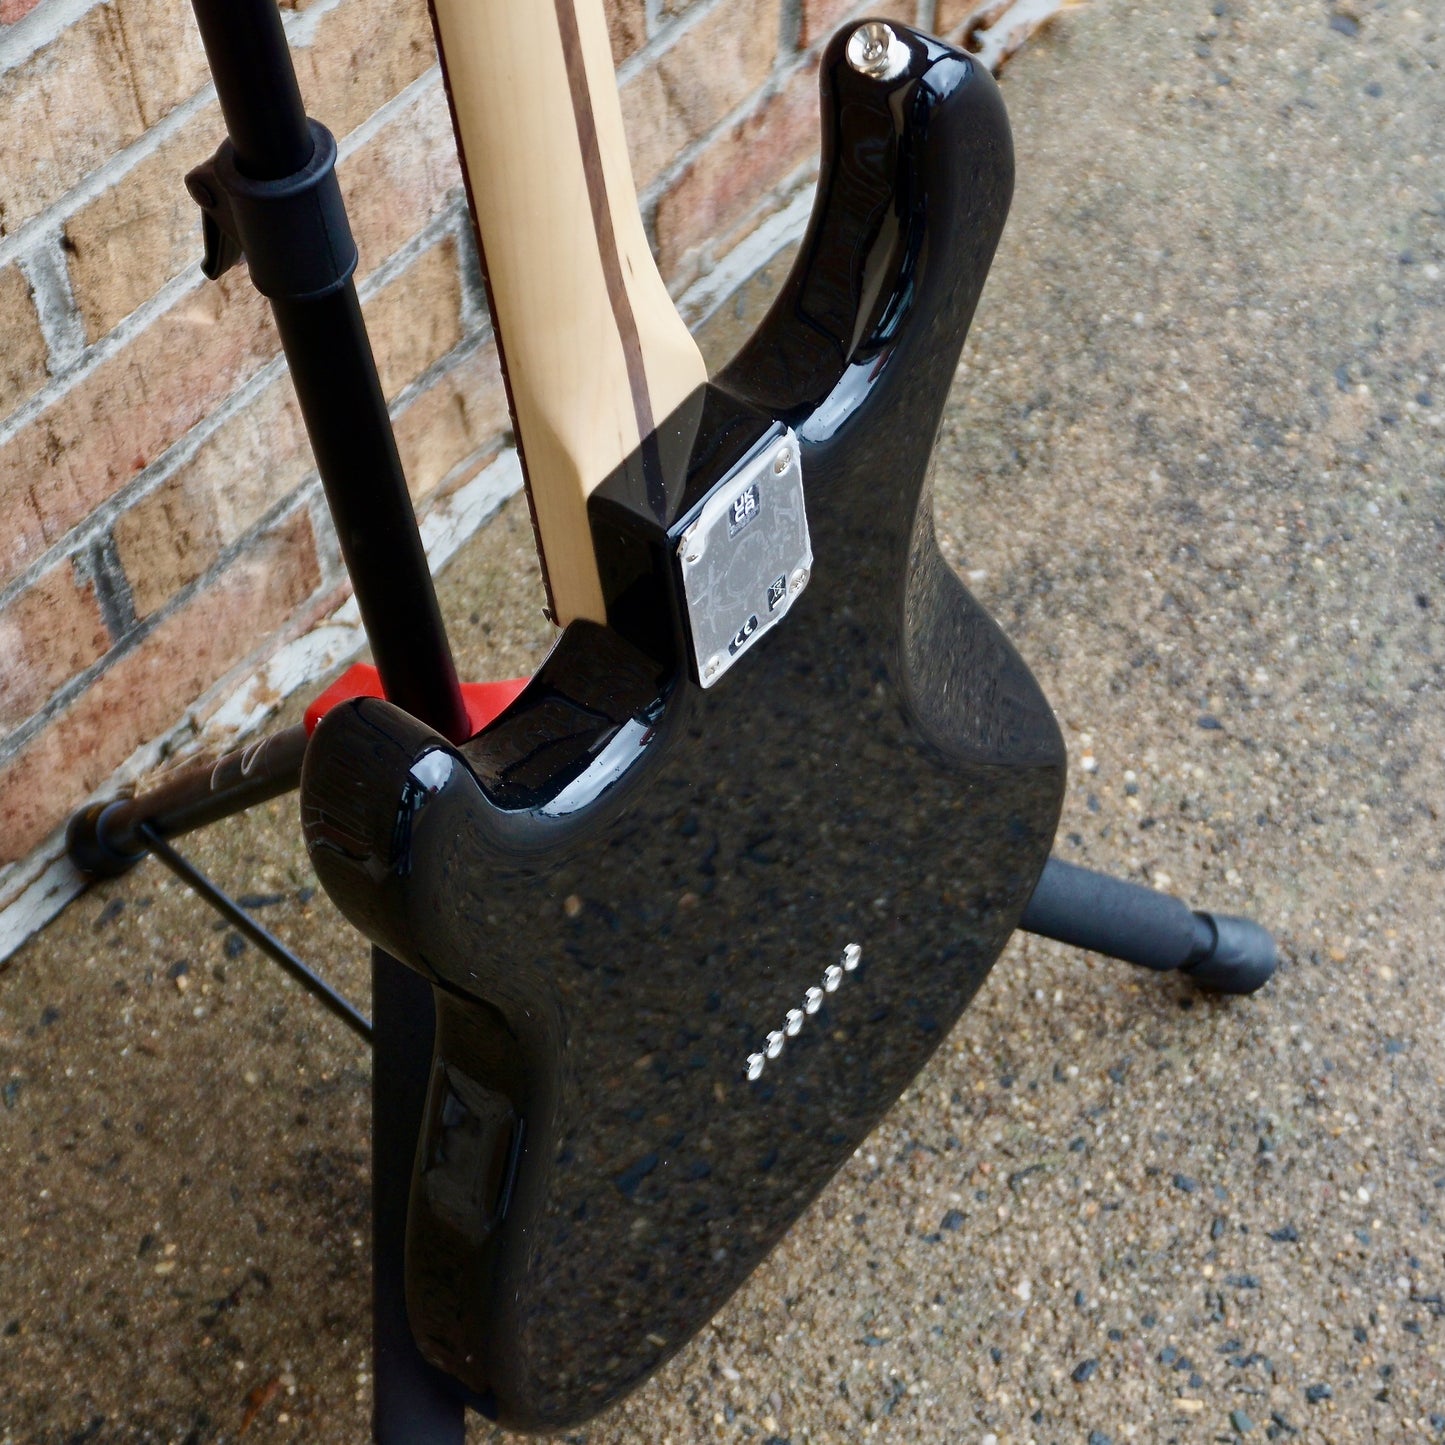 Fender Limited Edition Tom DeLonge Stratocaster Rosewood Fingerboard, Black